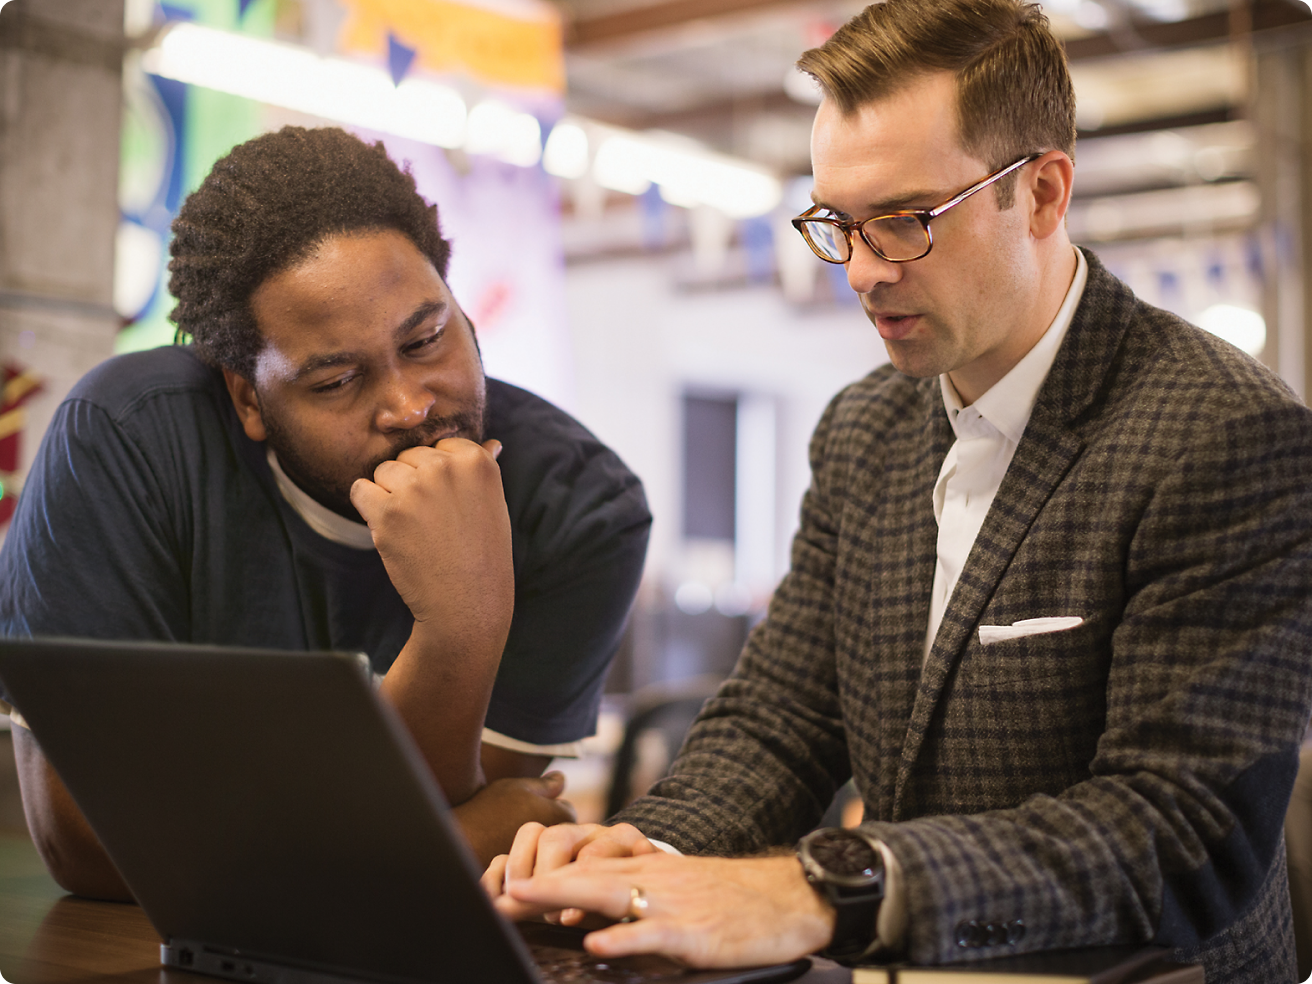 Dois homens, um deles com óculos, analisam juntos o conteúdo de um computador portátil num ambiente de escritório.